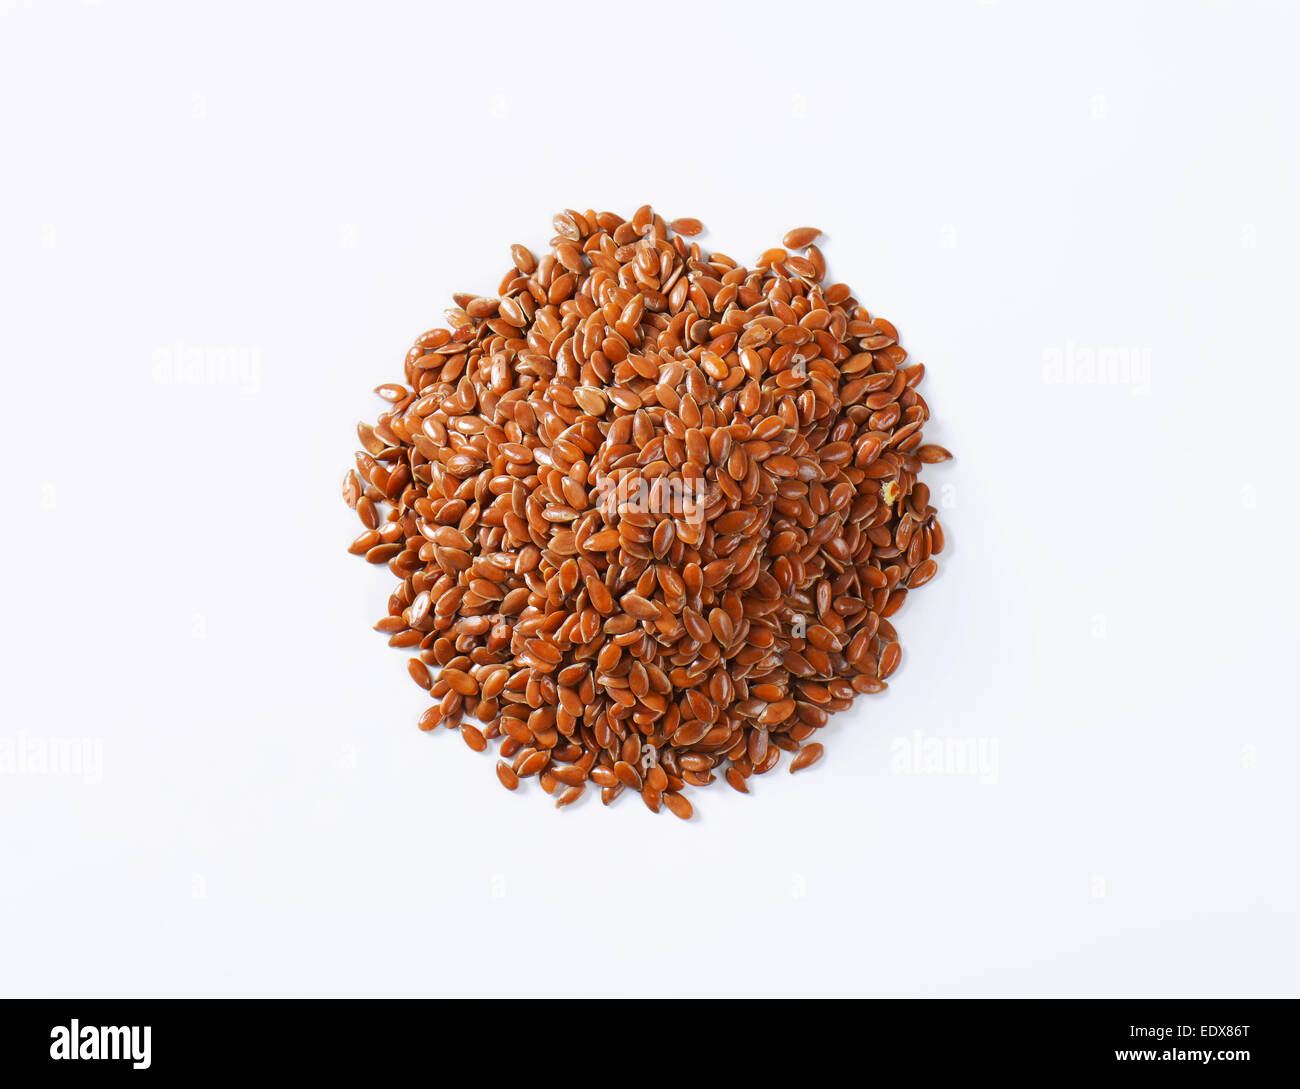 Las semillas de lino (también llamado linseeds) - fuente rica en grasas saludables, antioxidantes y fibra Foto de stock